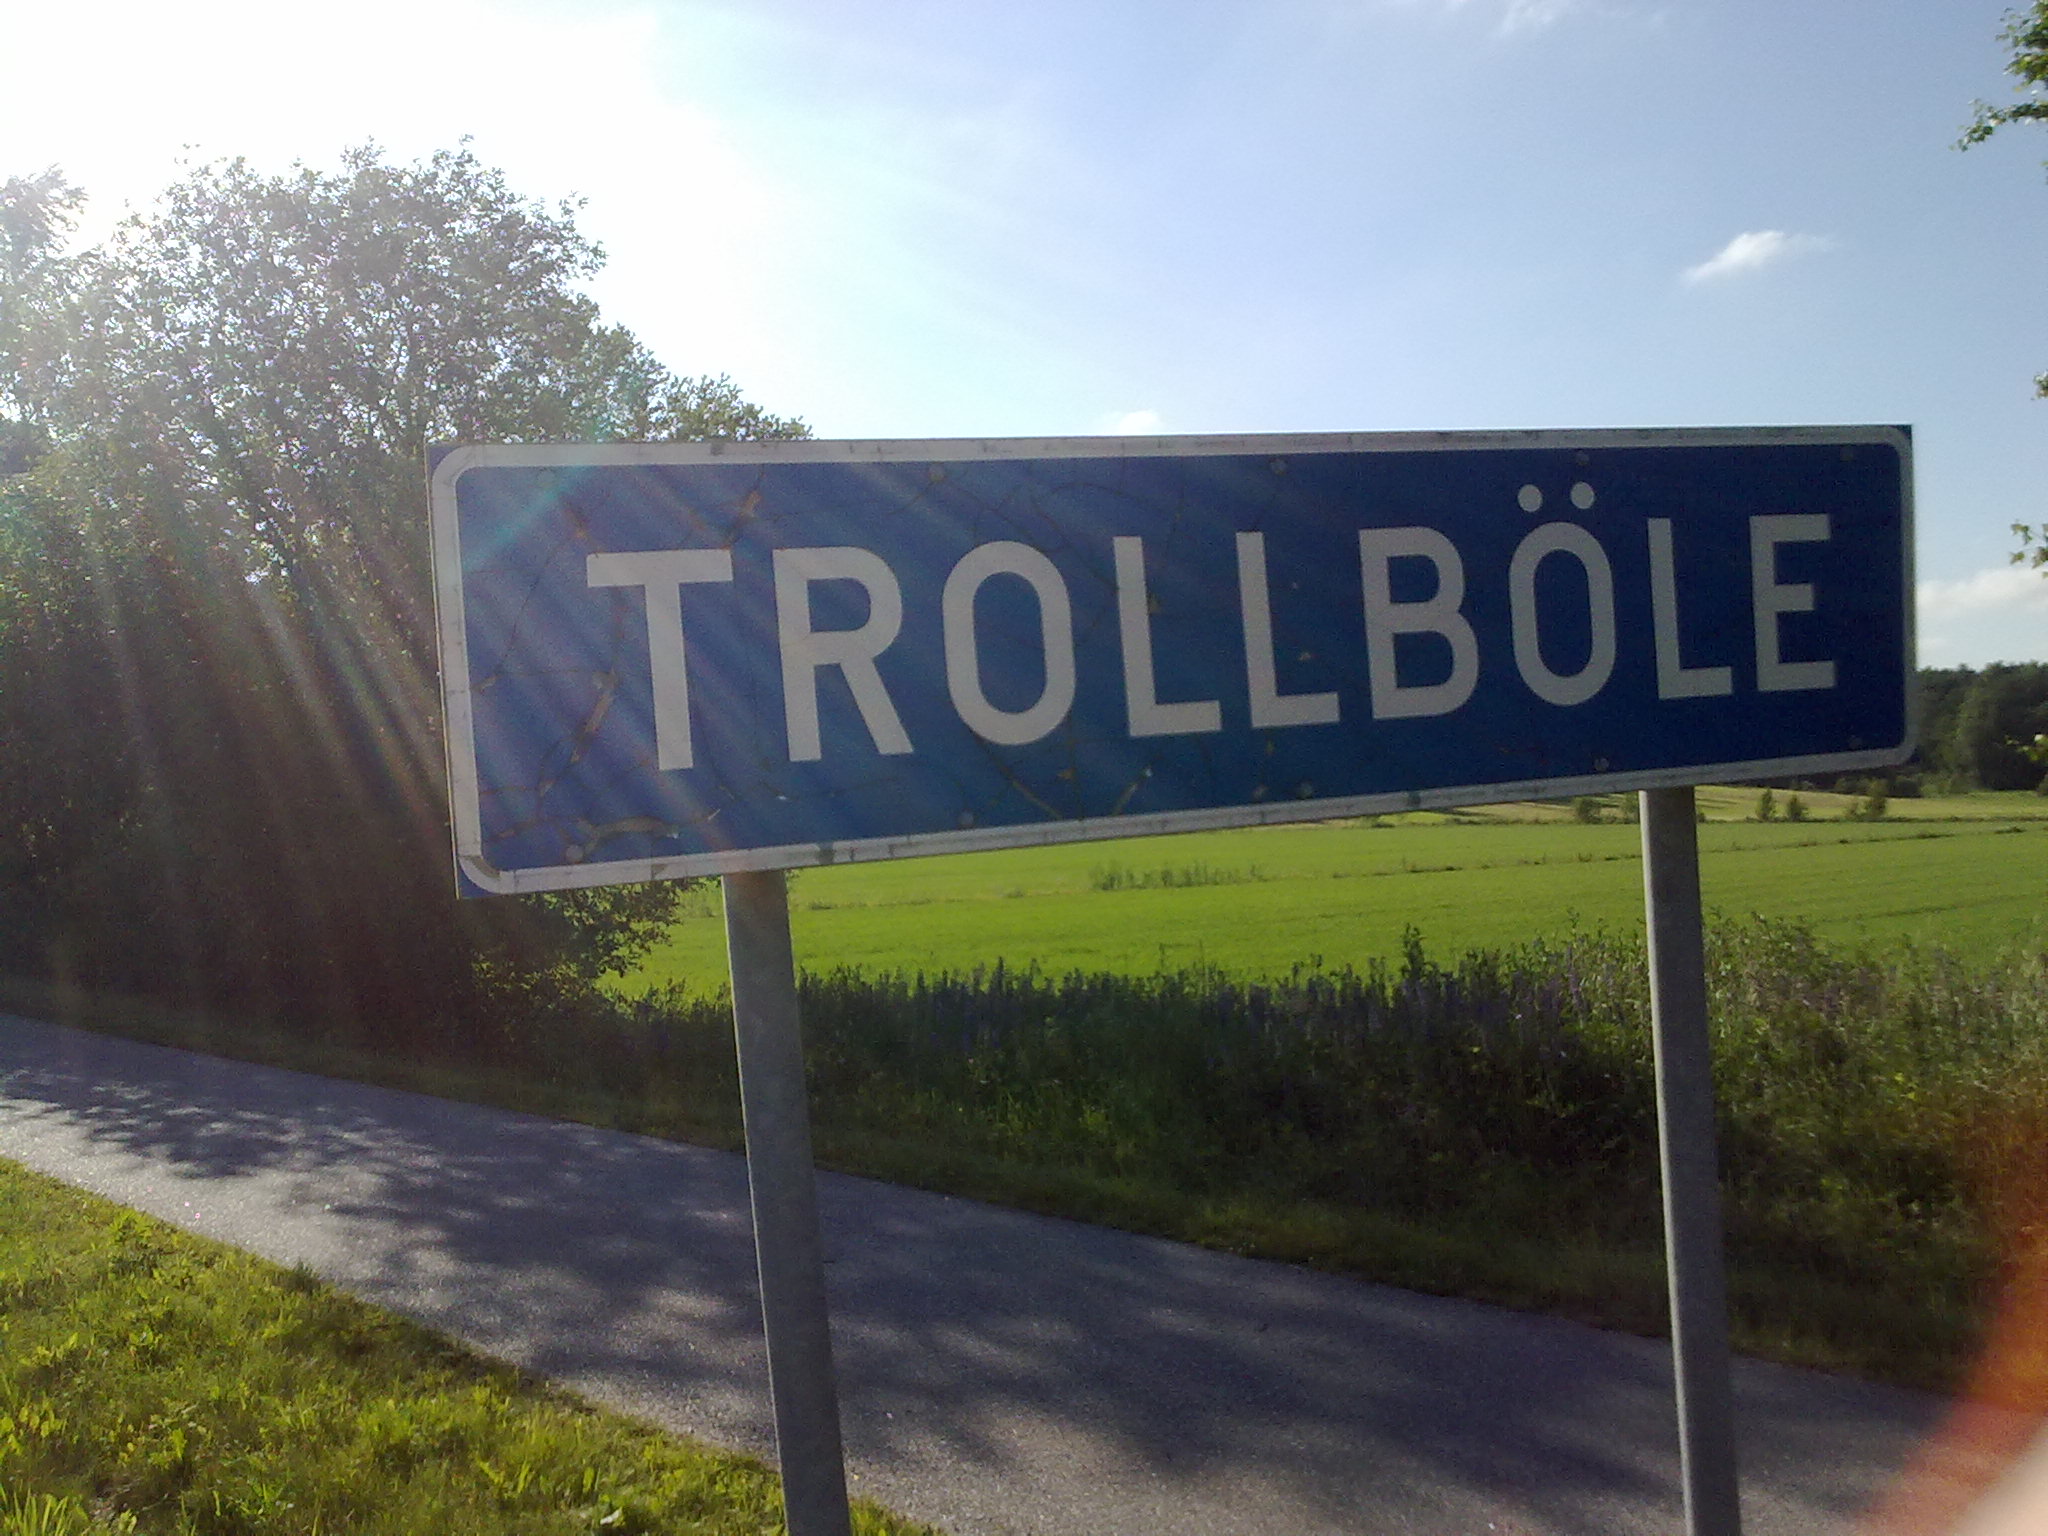 Trollböle-sign